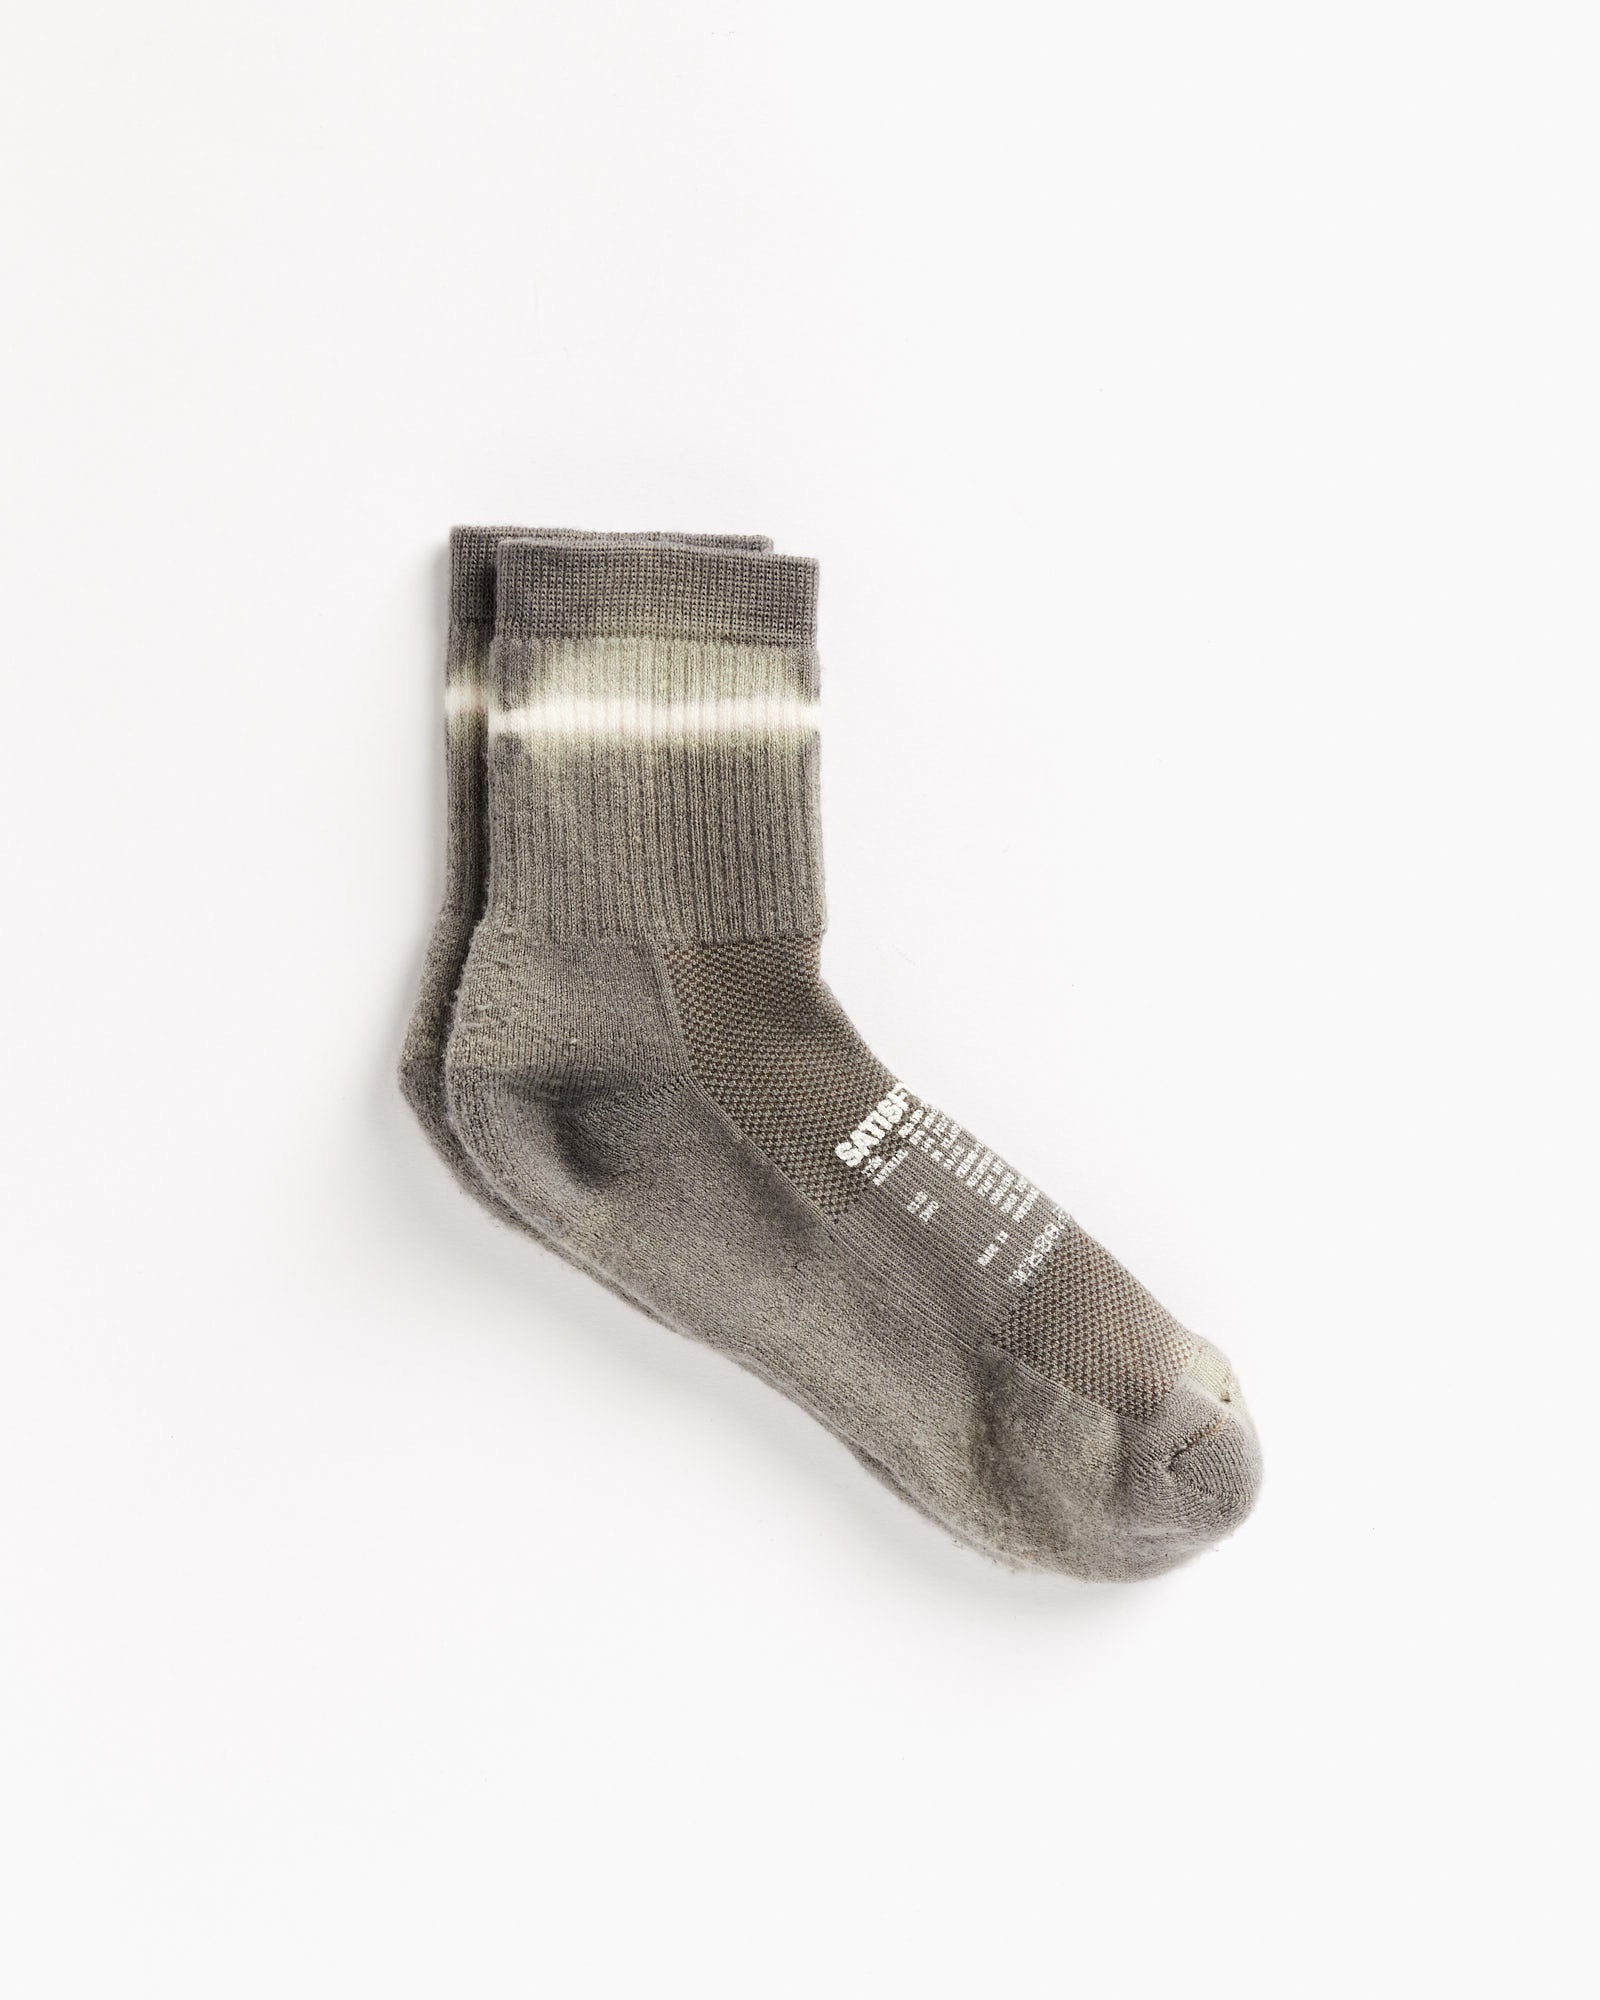 Merino Tube Socks in Morel Tie Dye